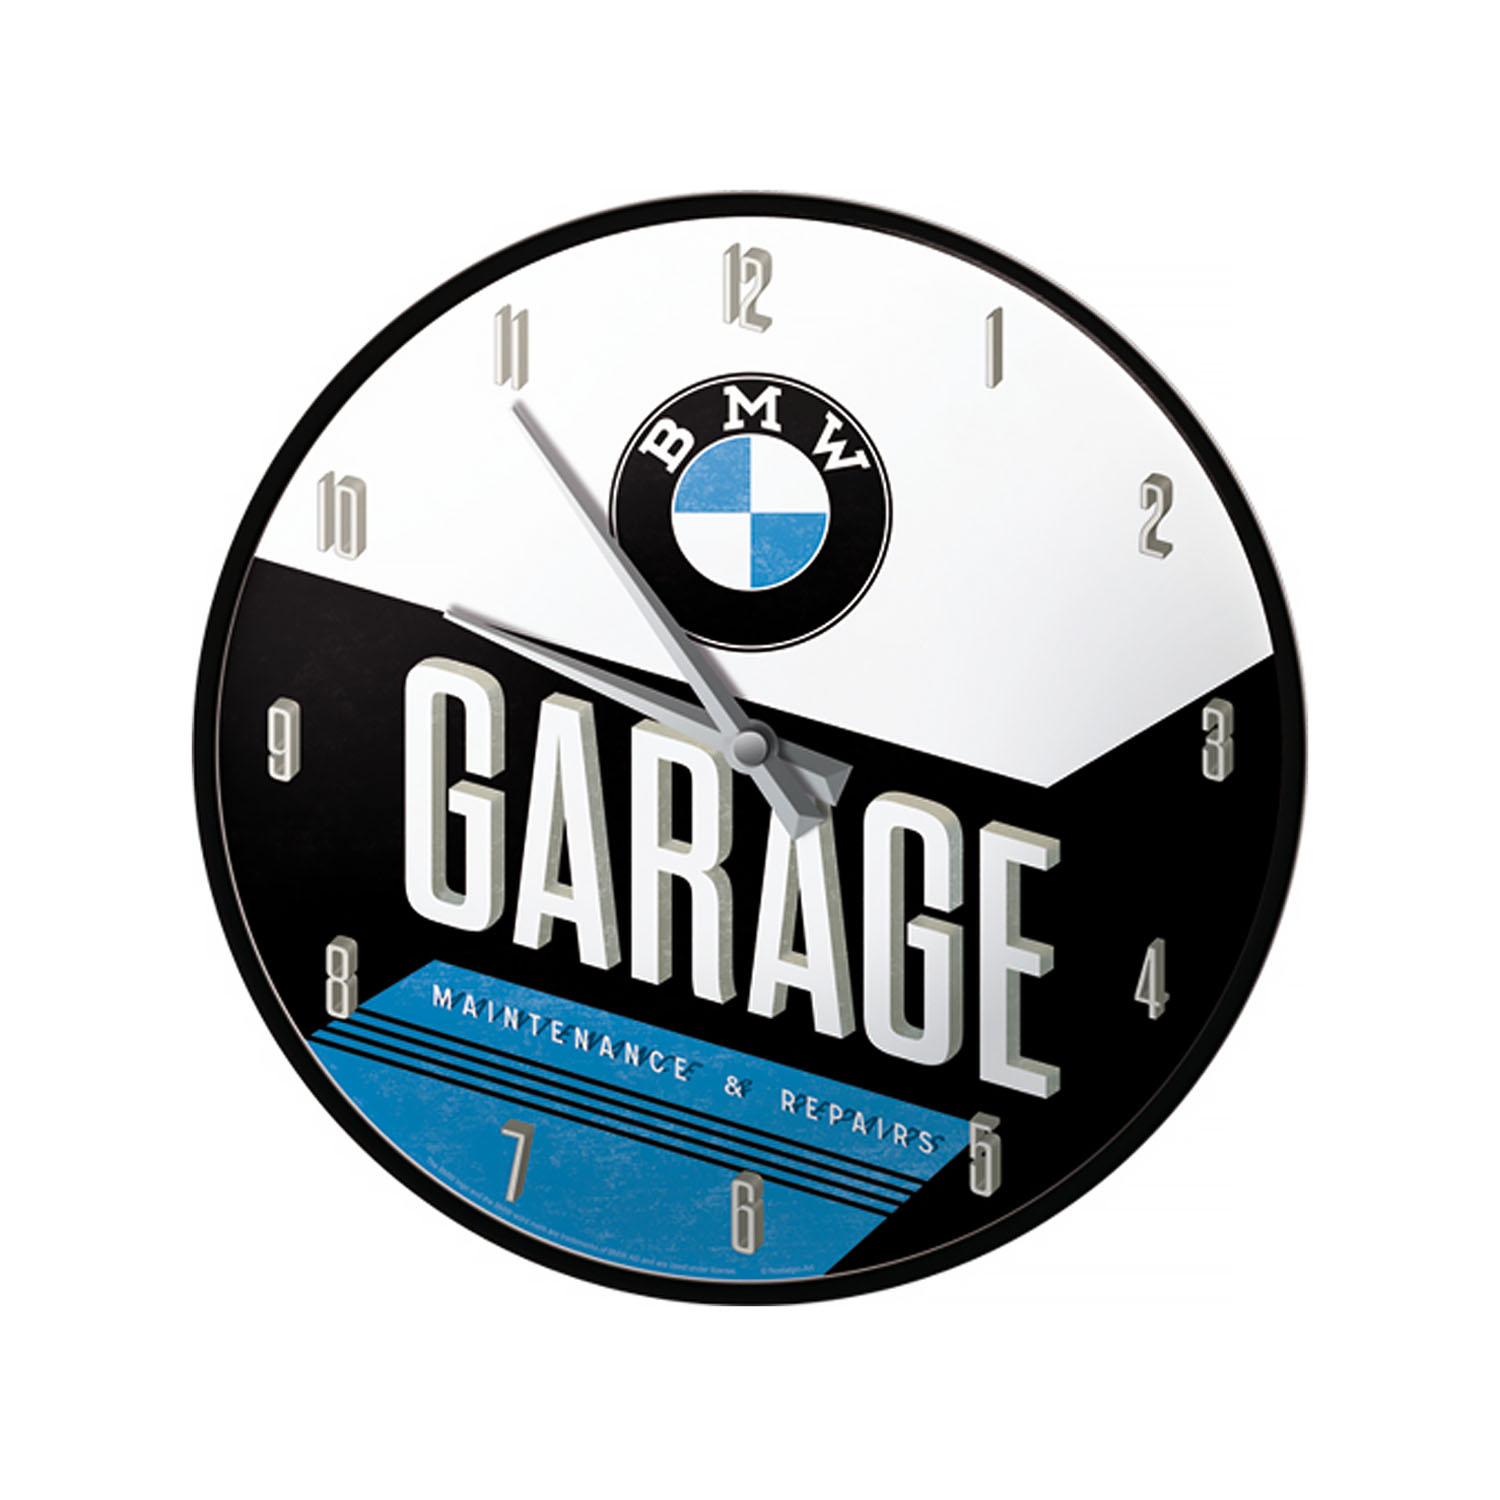 BMW Wanduhr Garage